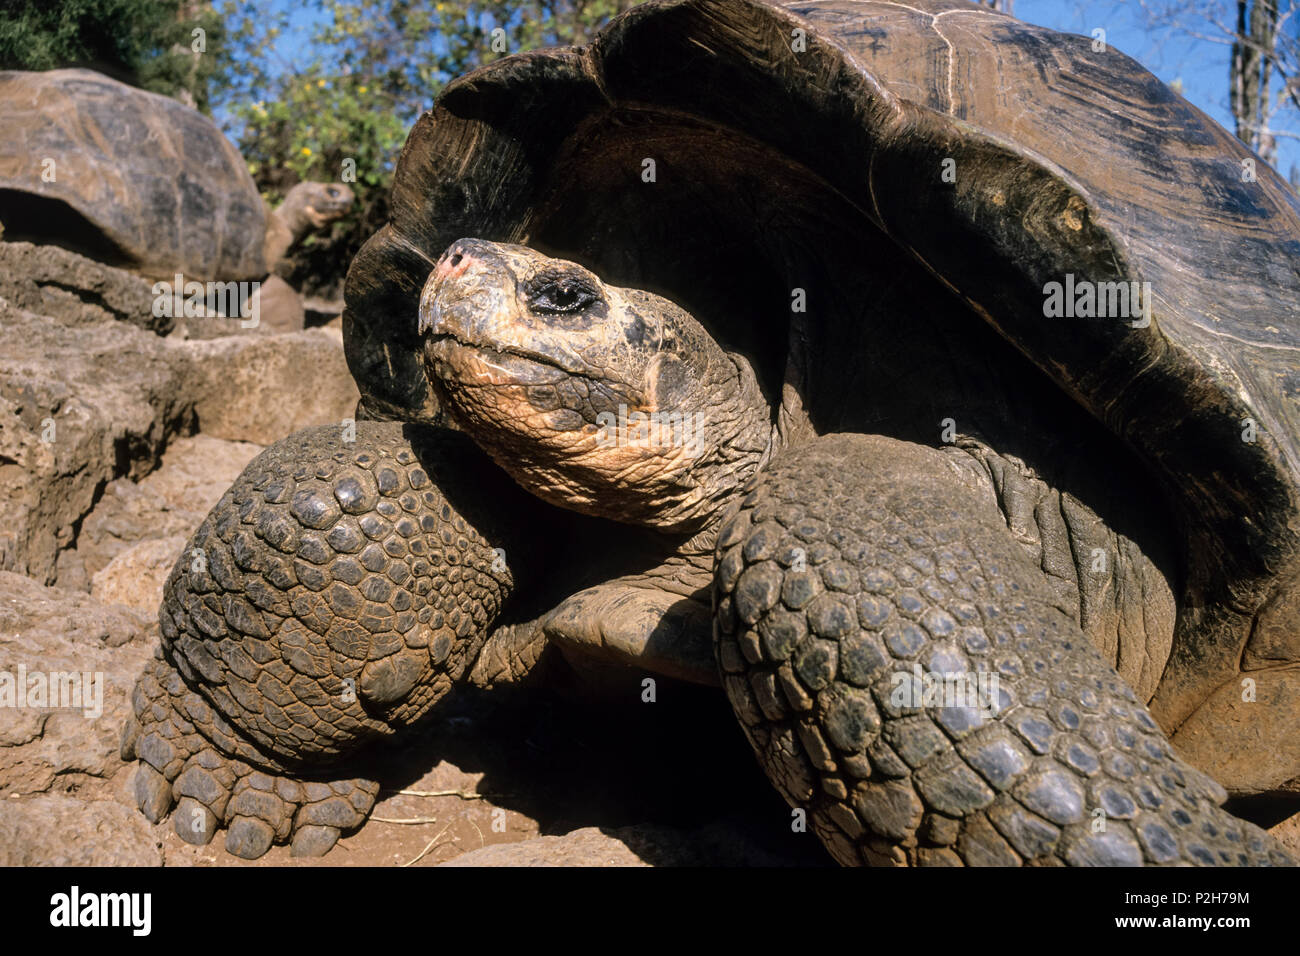 Les tortues géantes des Galapagos, Chelonoidis nigra, l'île de Santa Cruz, Galapagos, Equateur, Amérique du Sud Banque D'Images